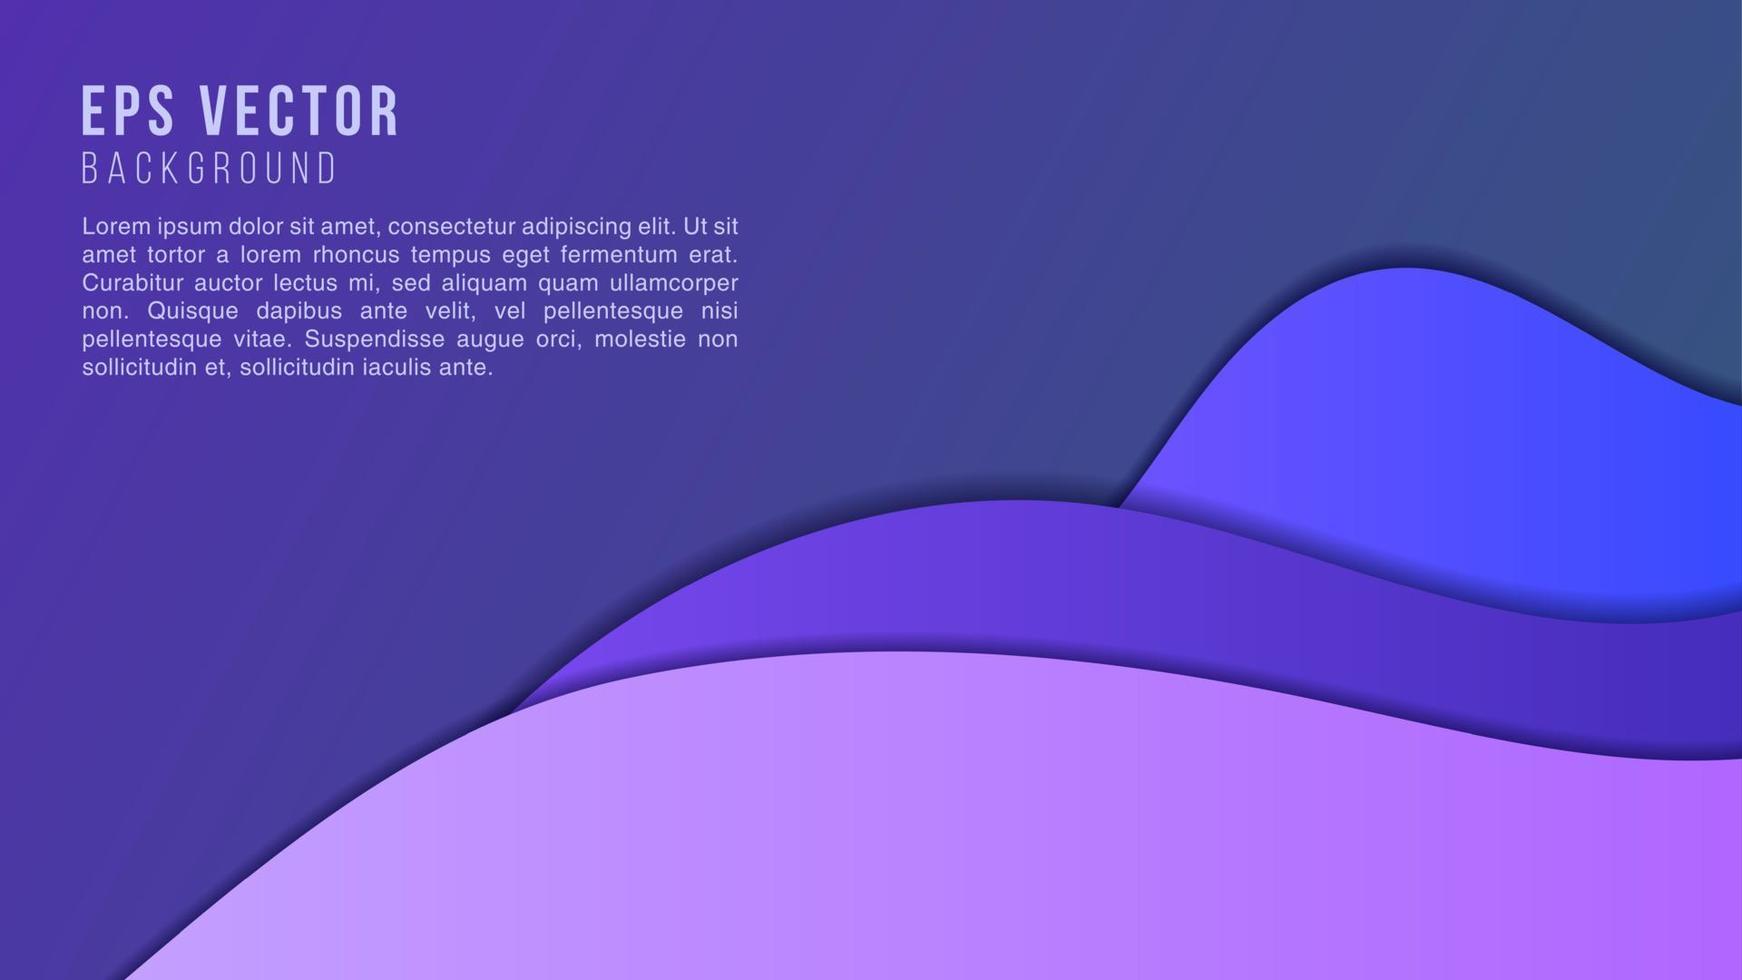 moderne 3d-papierschnitt-kunstschablone mit abstrakten kurvenformen, blaue farbe. öko-design-konzepthintergrund für flyer, bunner, präsentationen und poster. Vektor-Illustration vektor